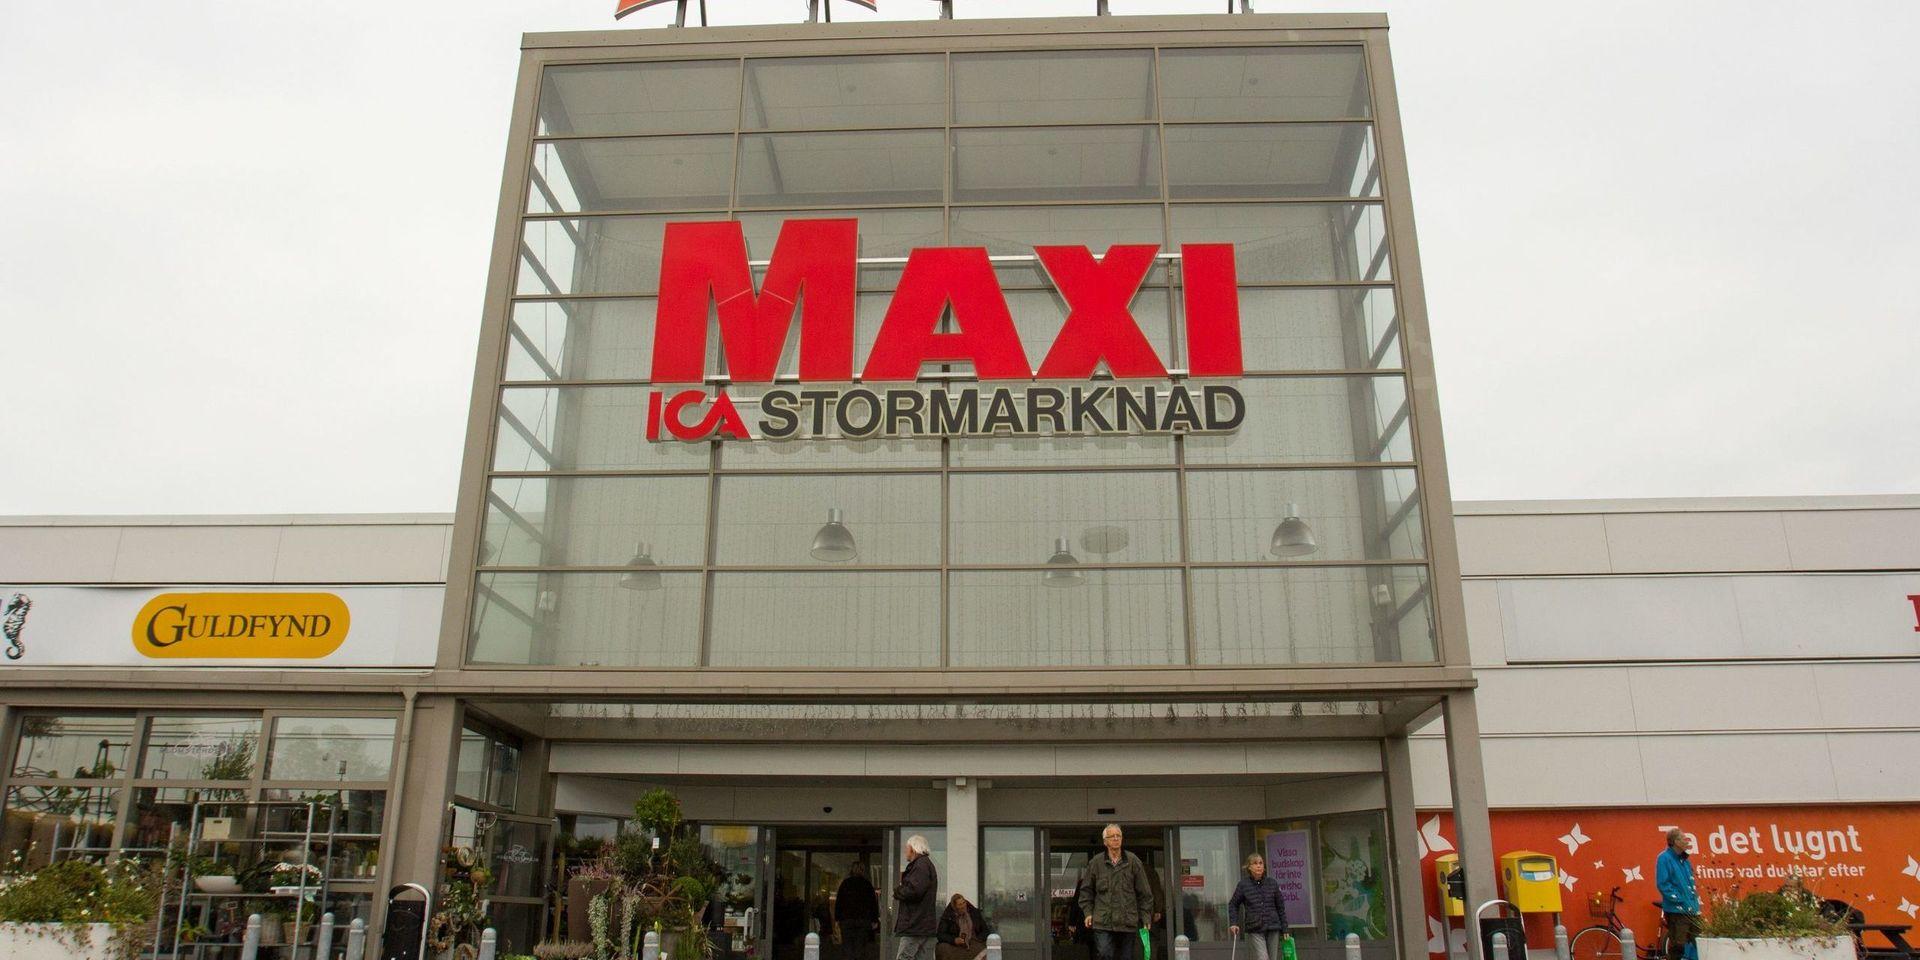 Hemtjänsten i Laholms kommun handlar numera alla varor till sina brukare på Ica Maxi Mellbystrand. 